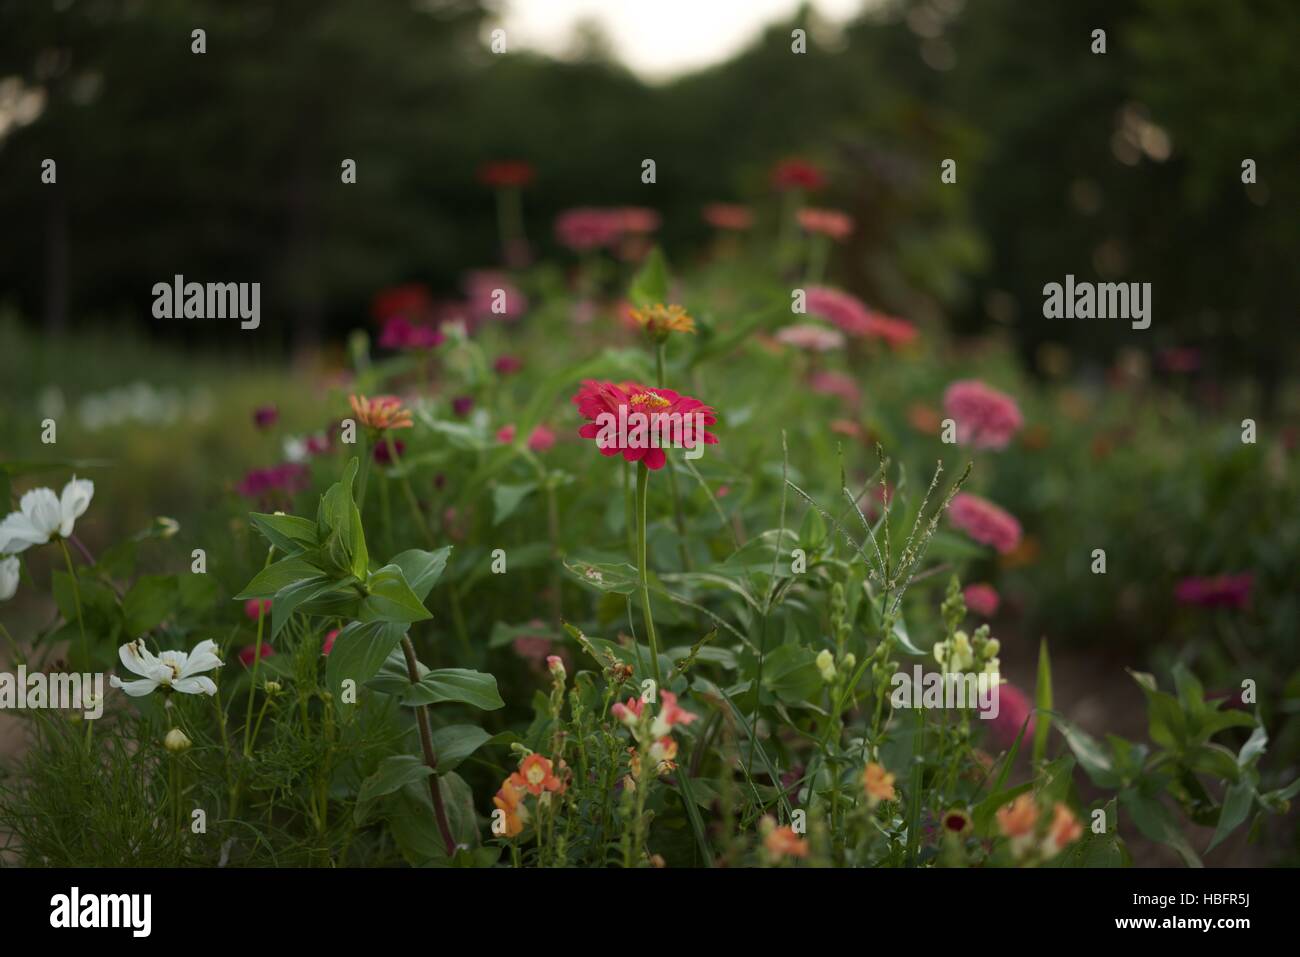 Row of zinnia cosmos snapdragons in a garden Stock Photo